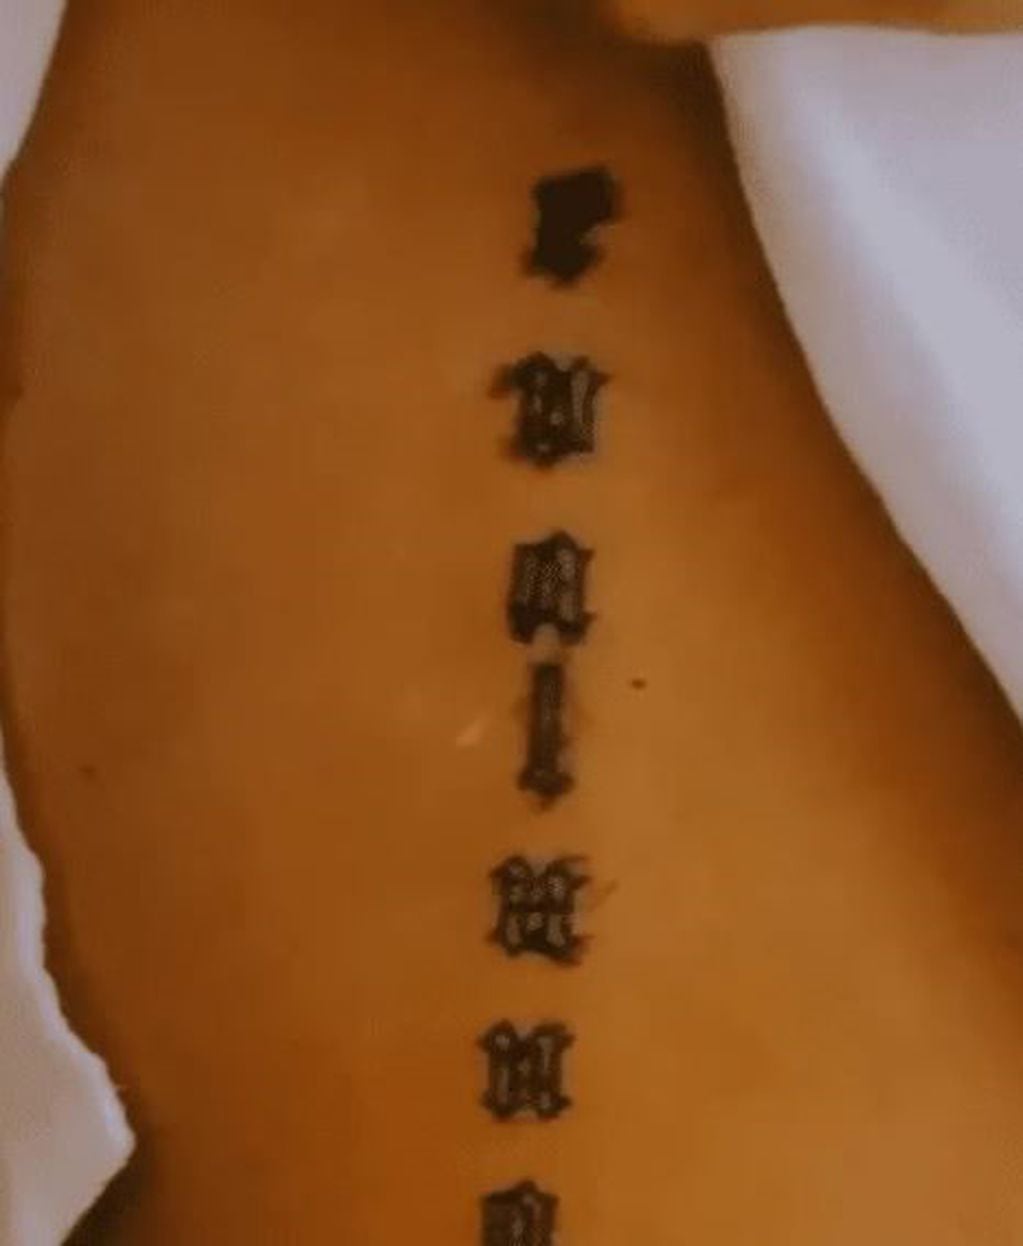 "Quédate con el que se tatue tu nombre", expresó Evaluna en el posteo que realizó en su cuenta oficial de Instagram.